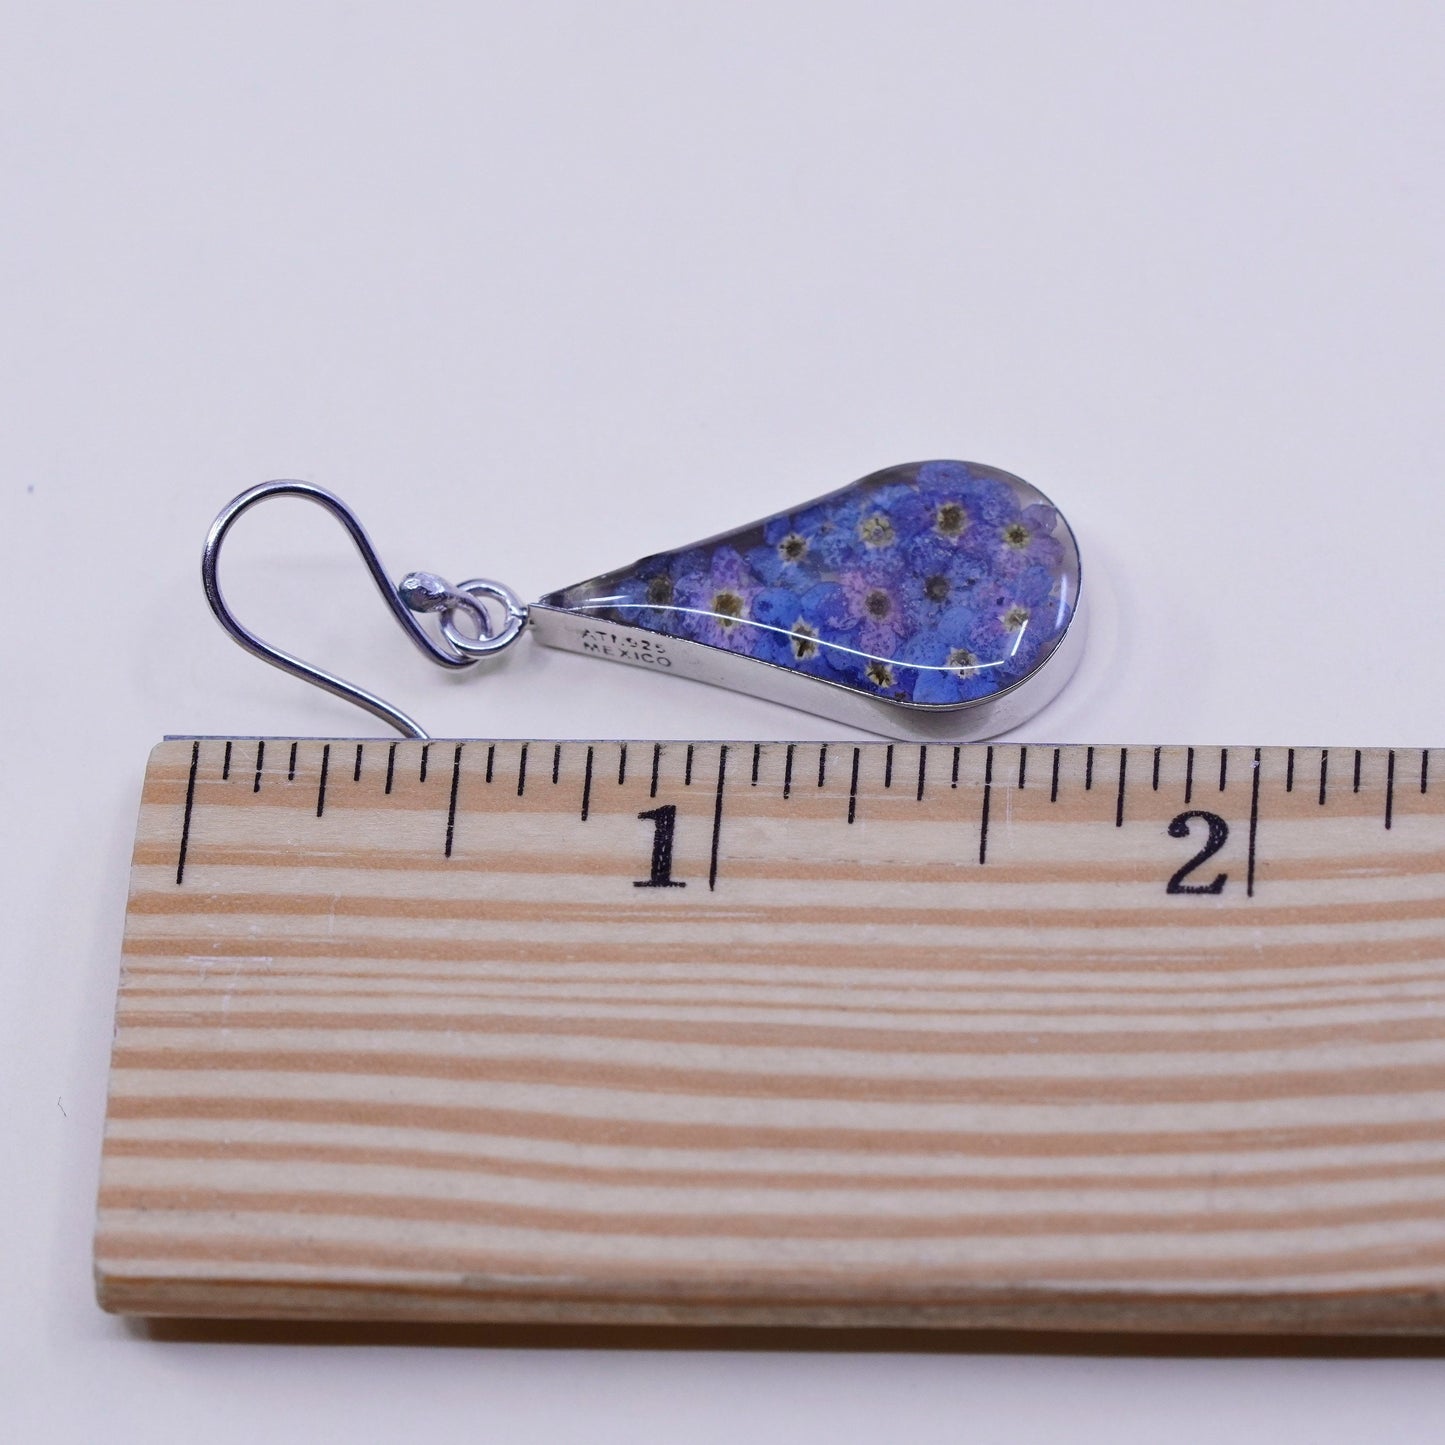 vtg Mexico sterling silver handmade earrings, 925 teardrop purple flower resin